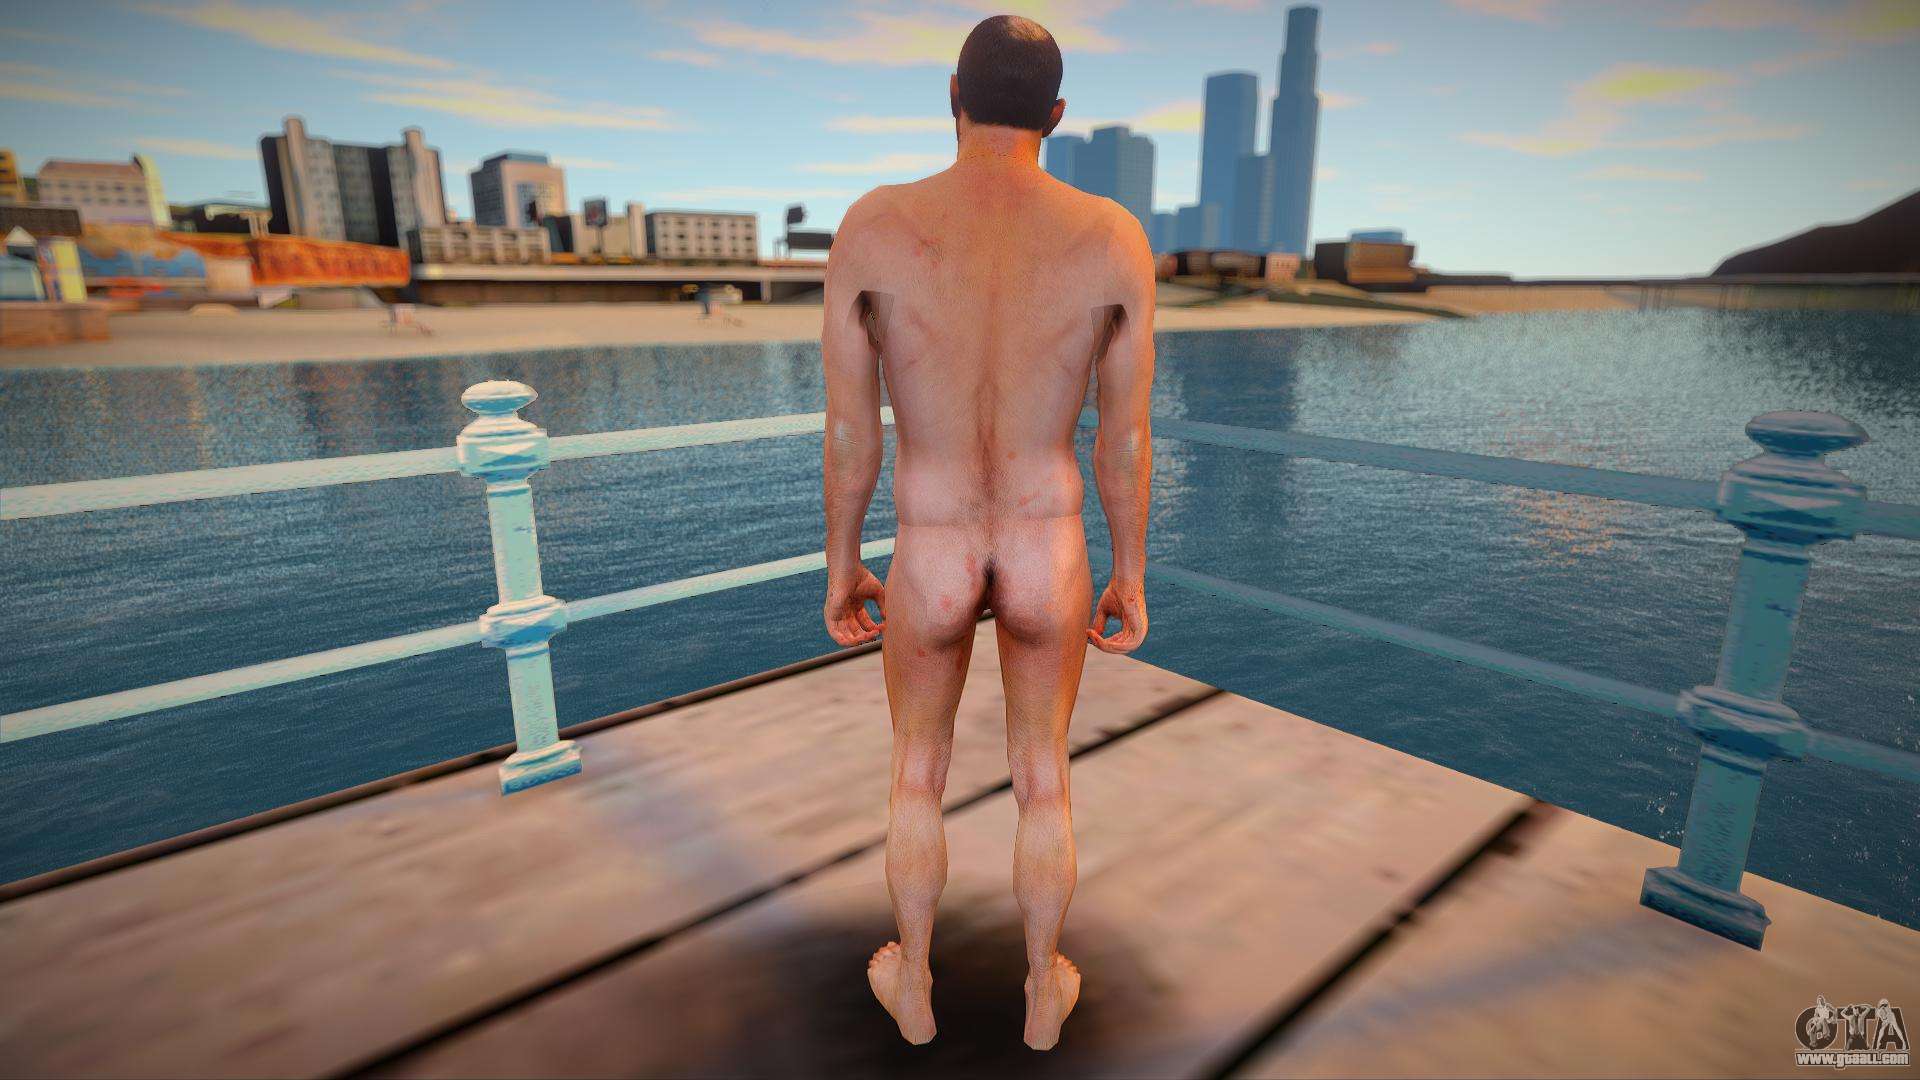 Naked Trevor from GTA V.